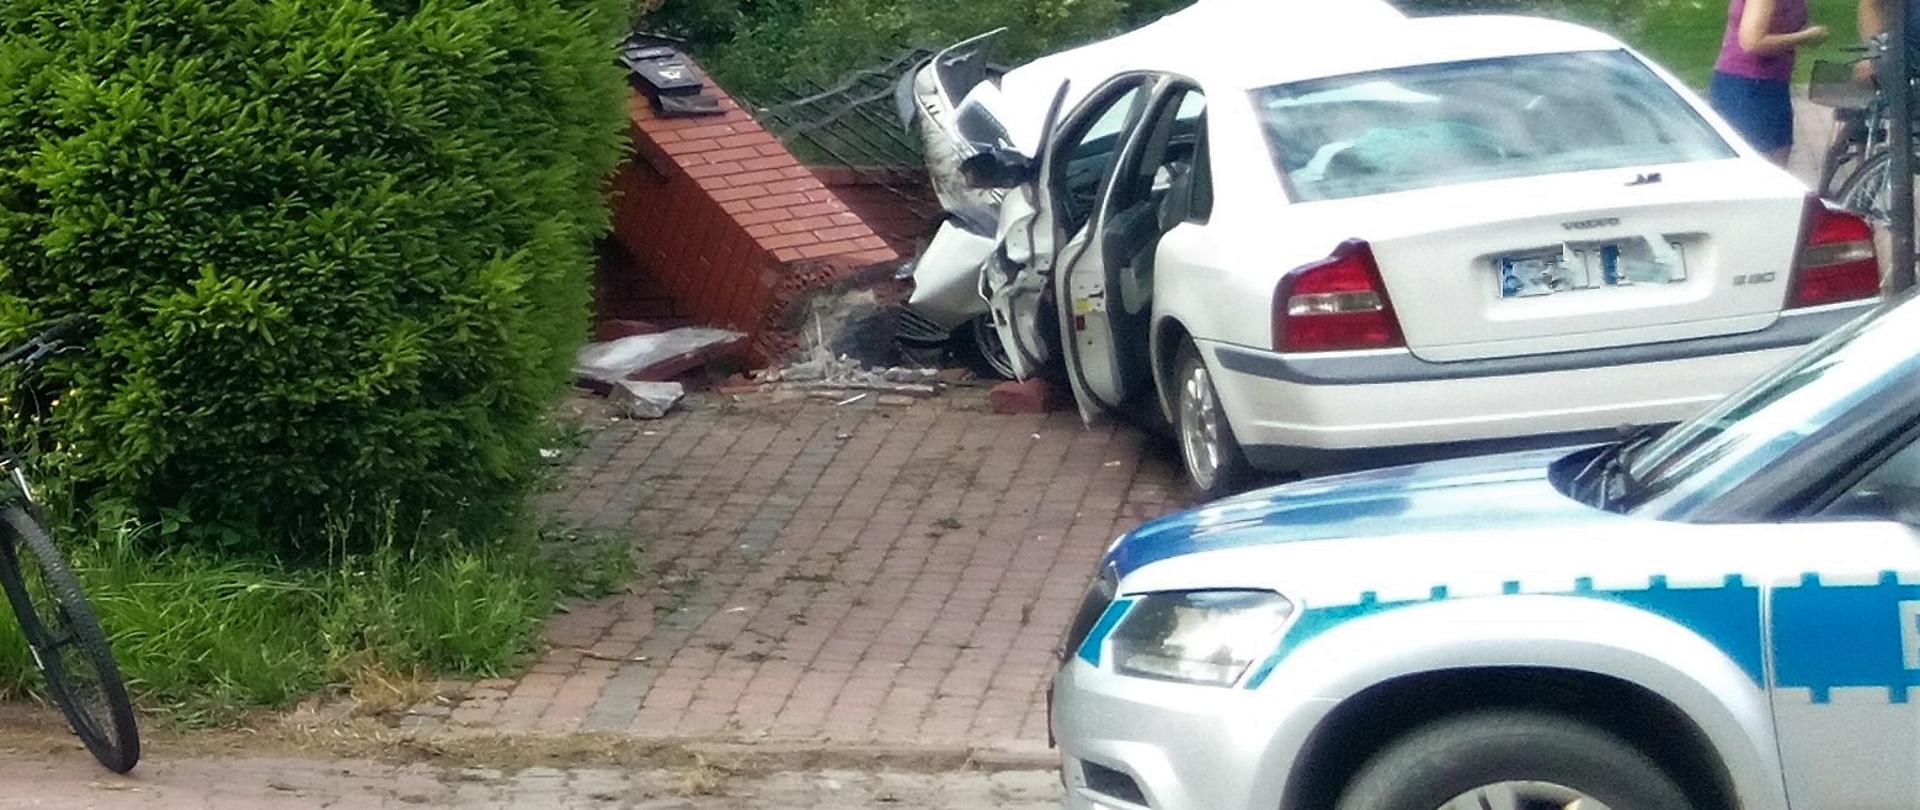 Na zdjęciu przedstawiono tył samochodu osobowego, który uderzył w ogrodzenie. Przed autem widać przewrócony murowany z klinkieru słupek ogrodzeniowy a bliżej patrzącego pokazano fragment policyjnego radiowozu.